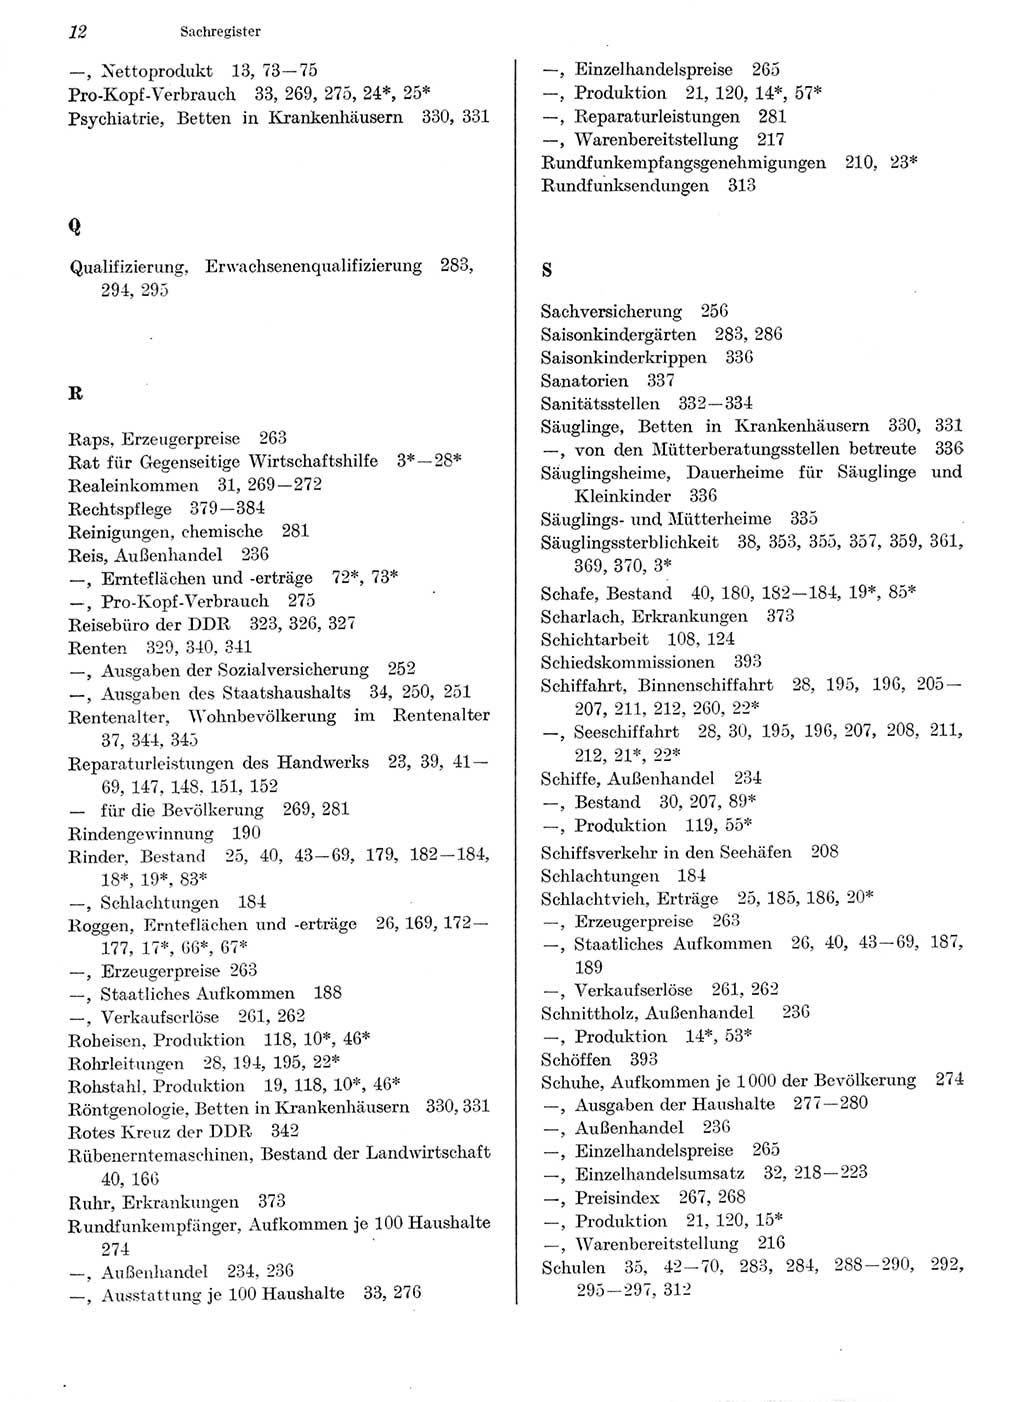 Statistisches Jahrbuch der Deutschen Demokratischen Republik (DDR) 1979, Seite 12 (Stat. Jb. DDR 1979, S. 12)